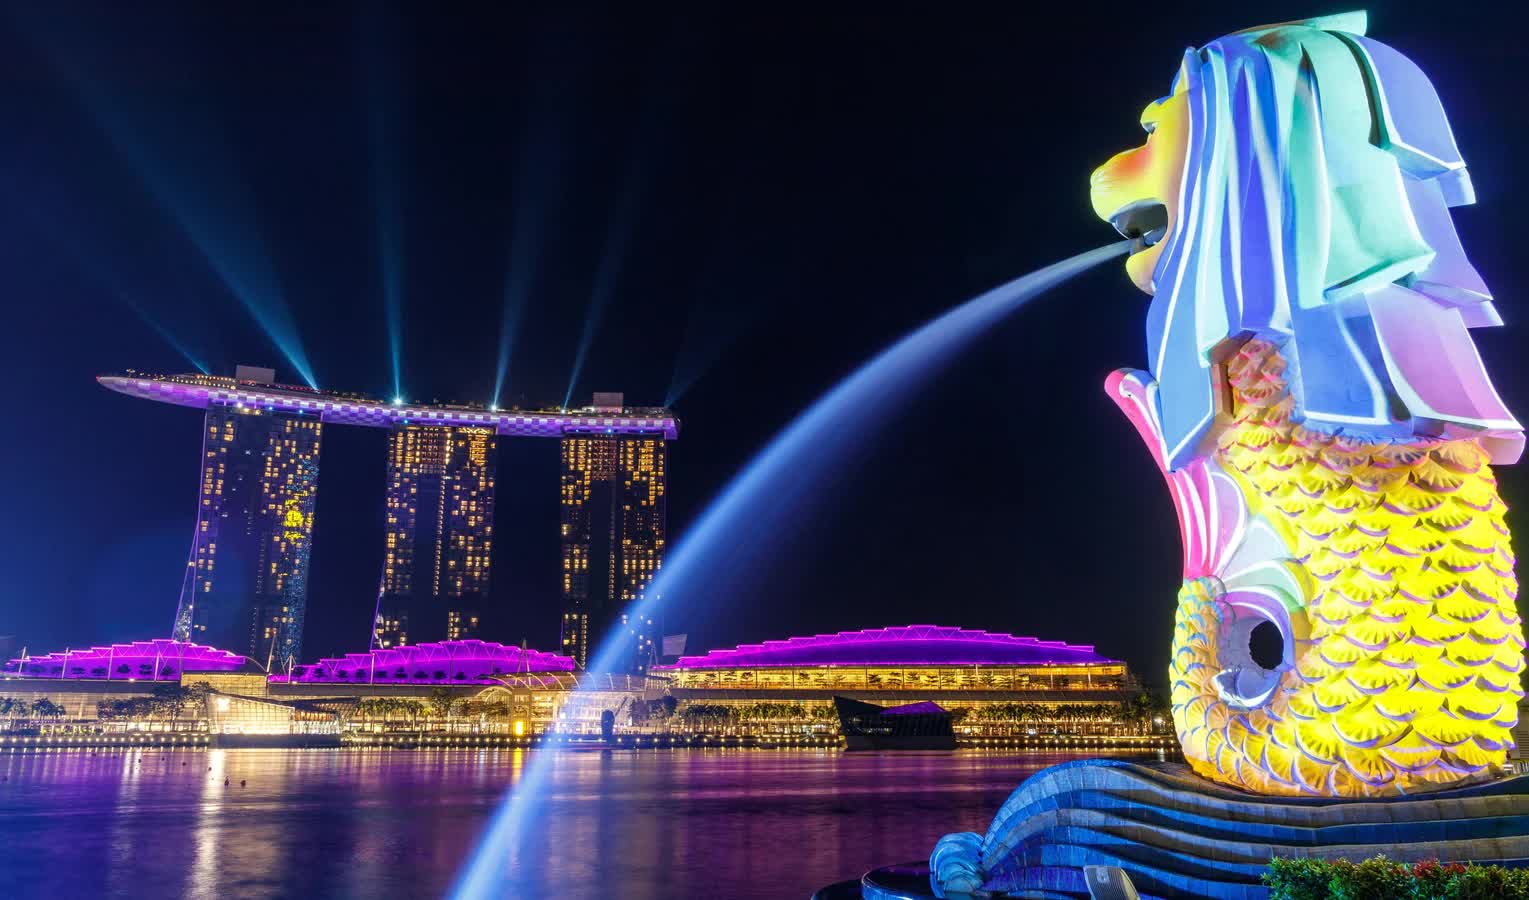 Du lịch Singapore – Những trải nghiệm thú vị du khách nên thử qua